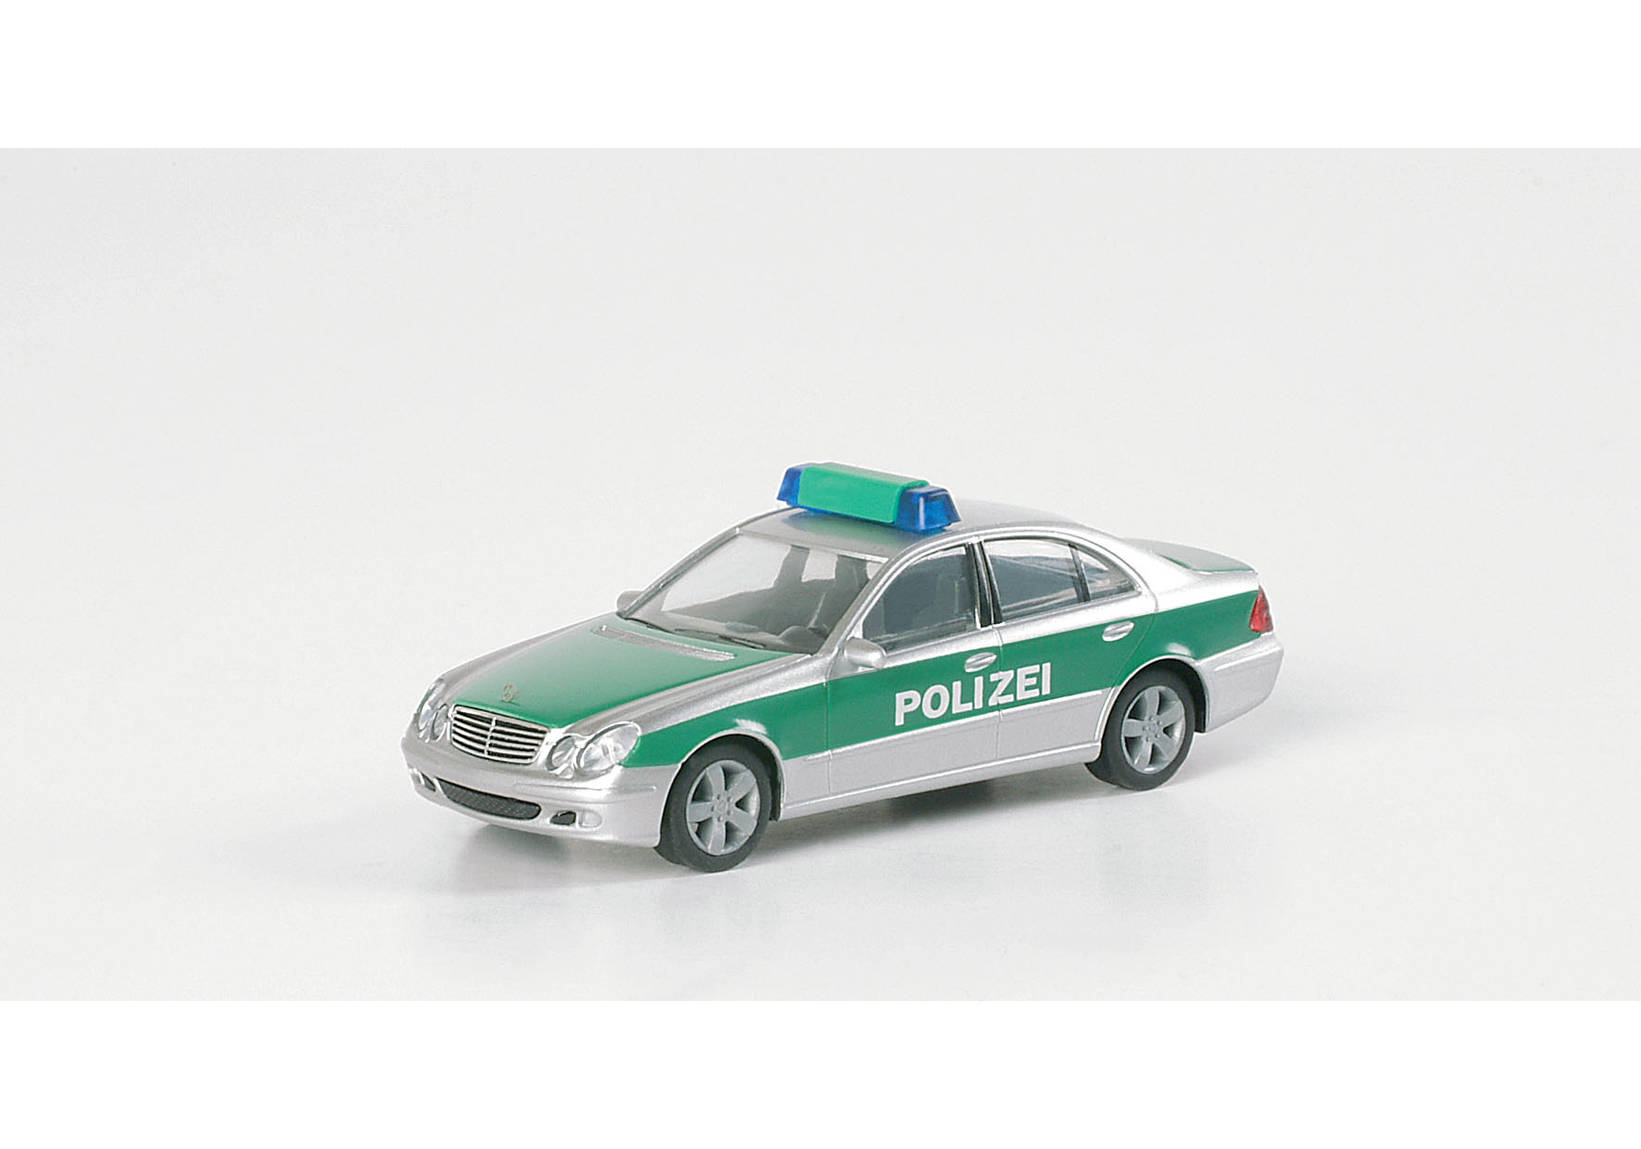 Mercedes-Benz E Class "Police BW"